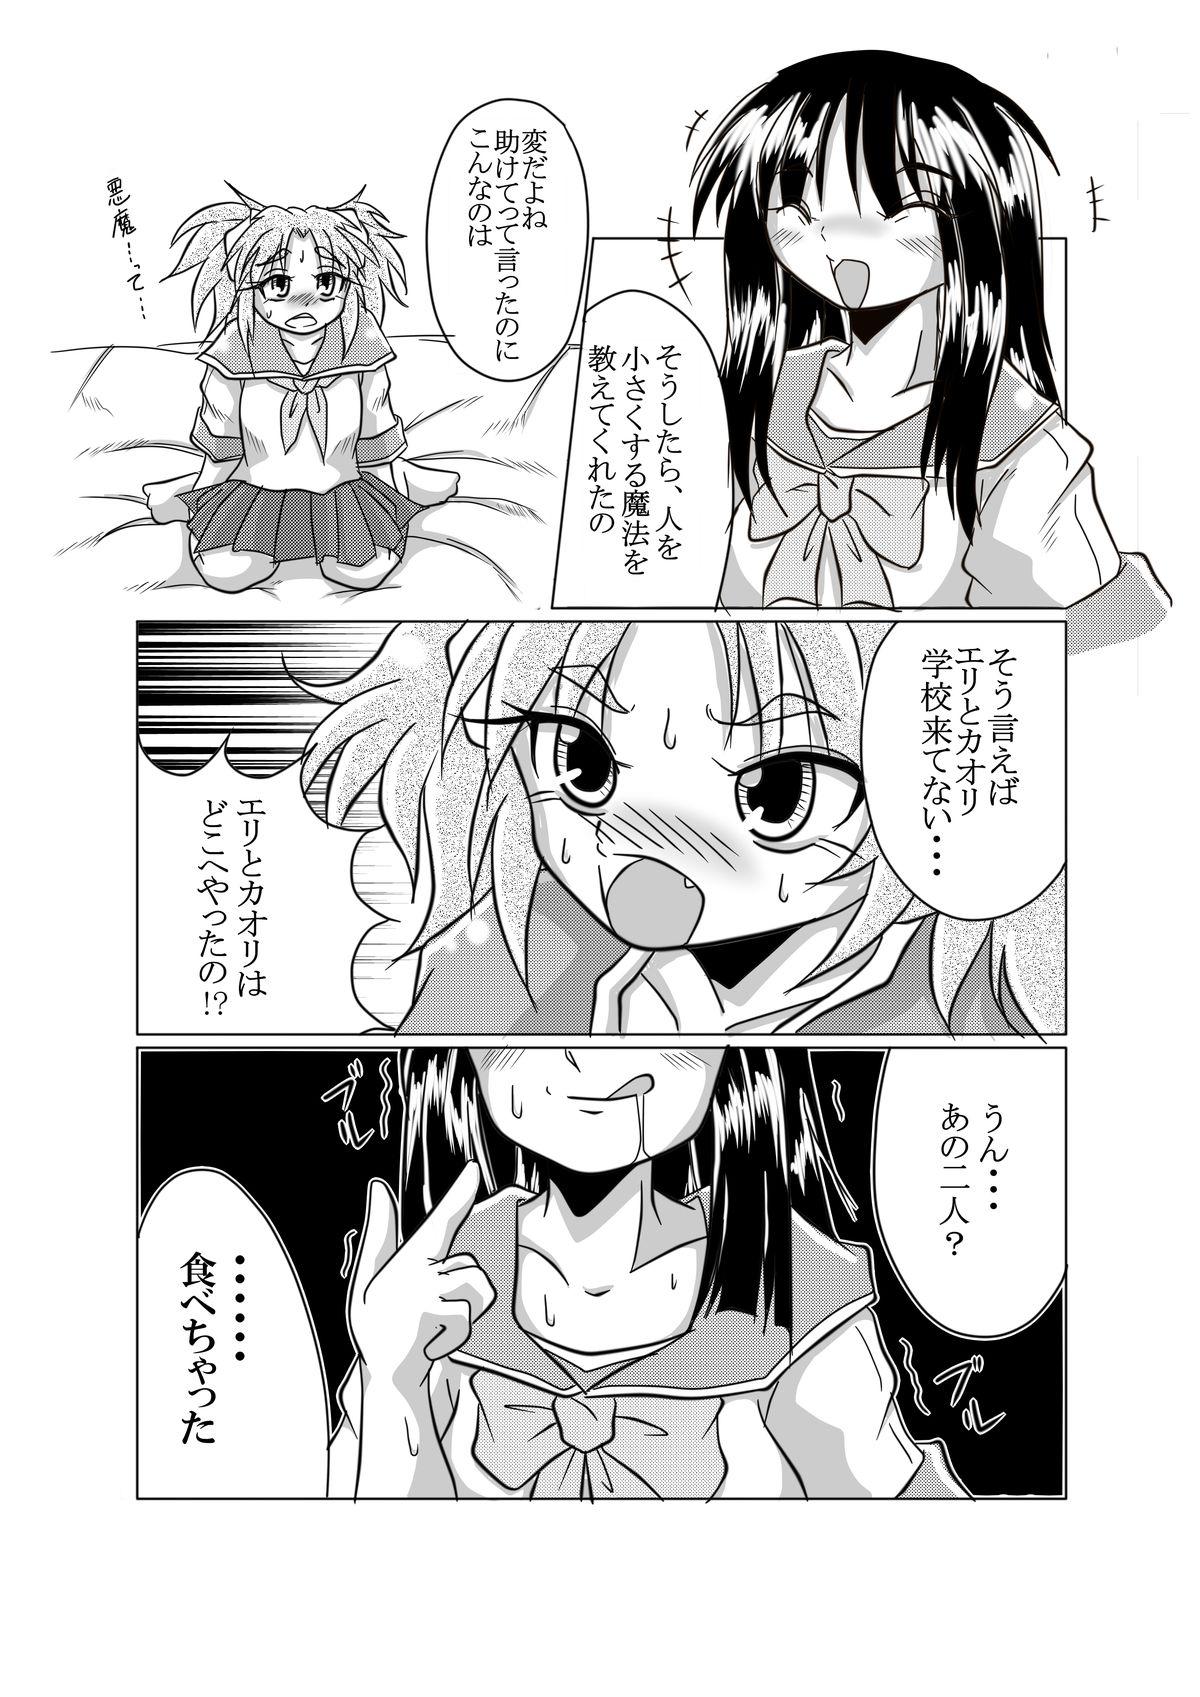 No Condom Watashi no Naka ni Iru Daisuki na Daisuki na Tomodachi Jacking Off - Page 6